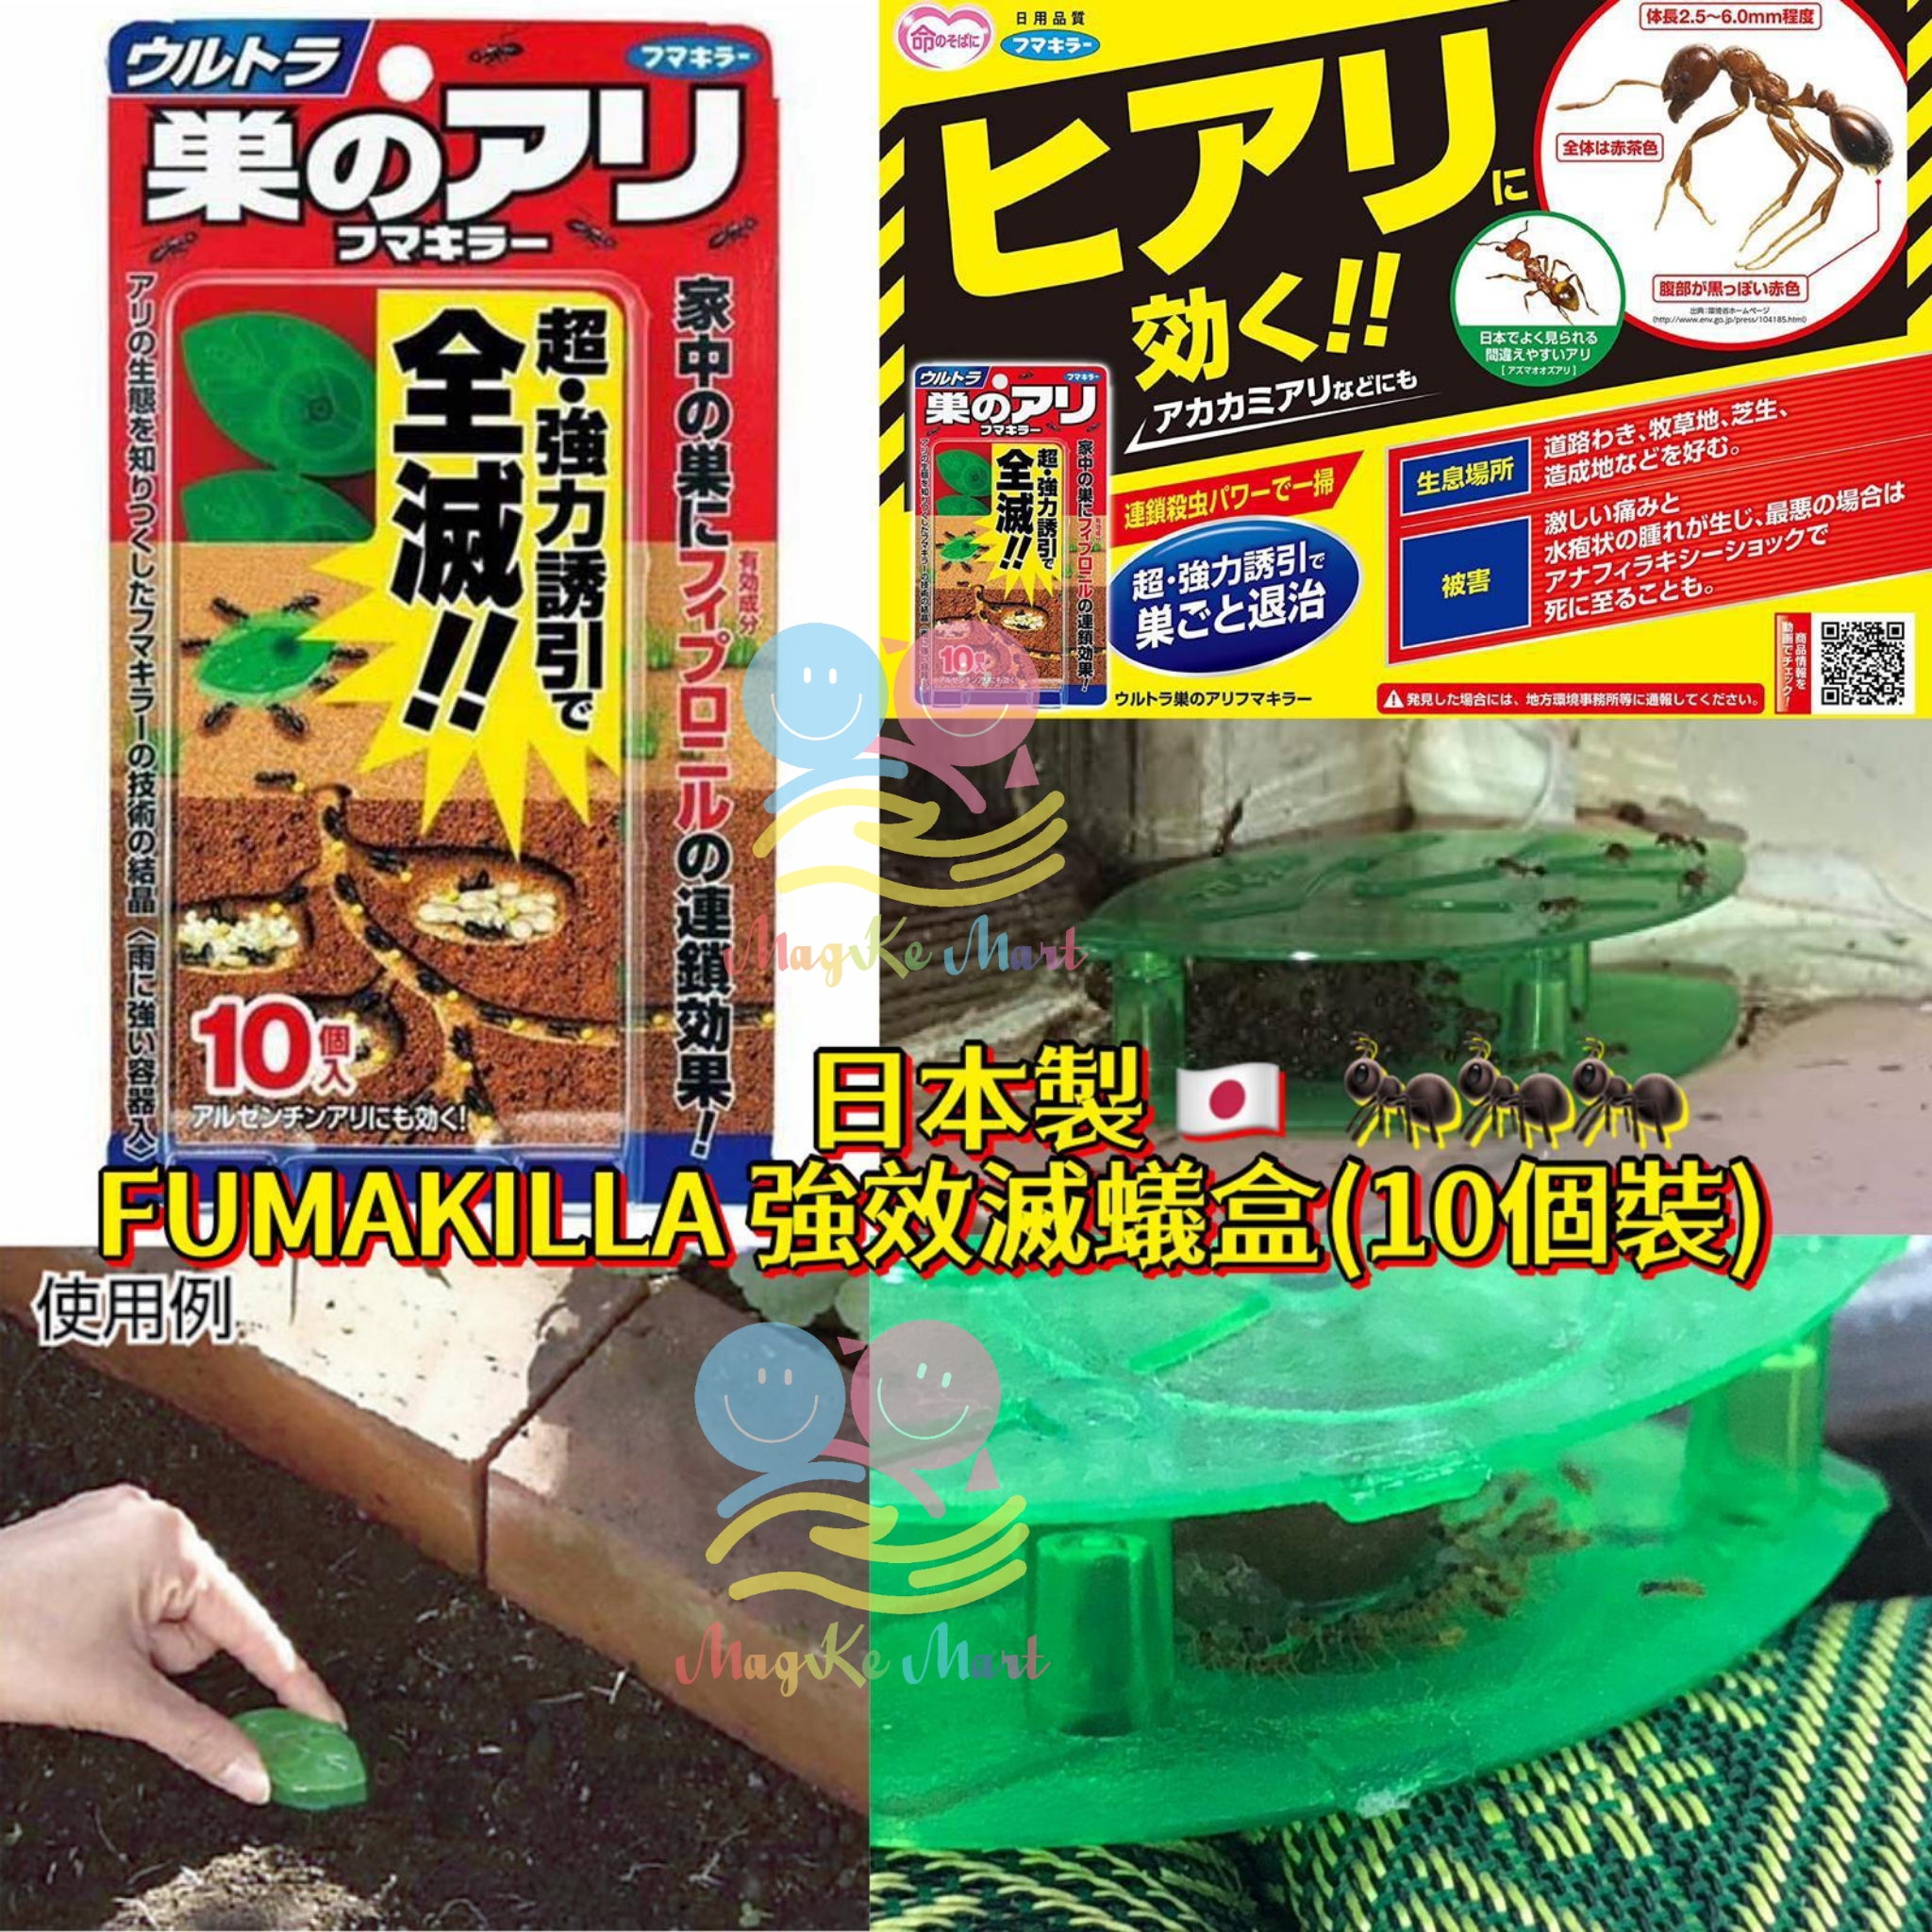 日本 FUMAKILLA 強效滅蟻盒(1盒10個)